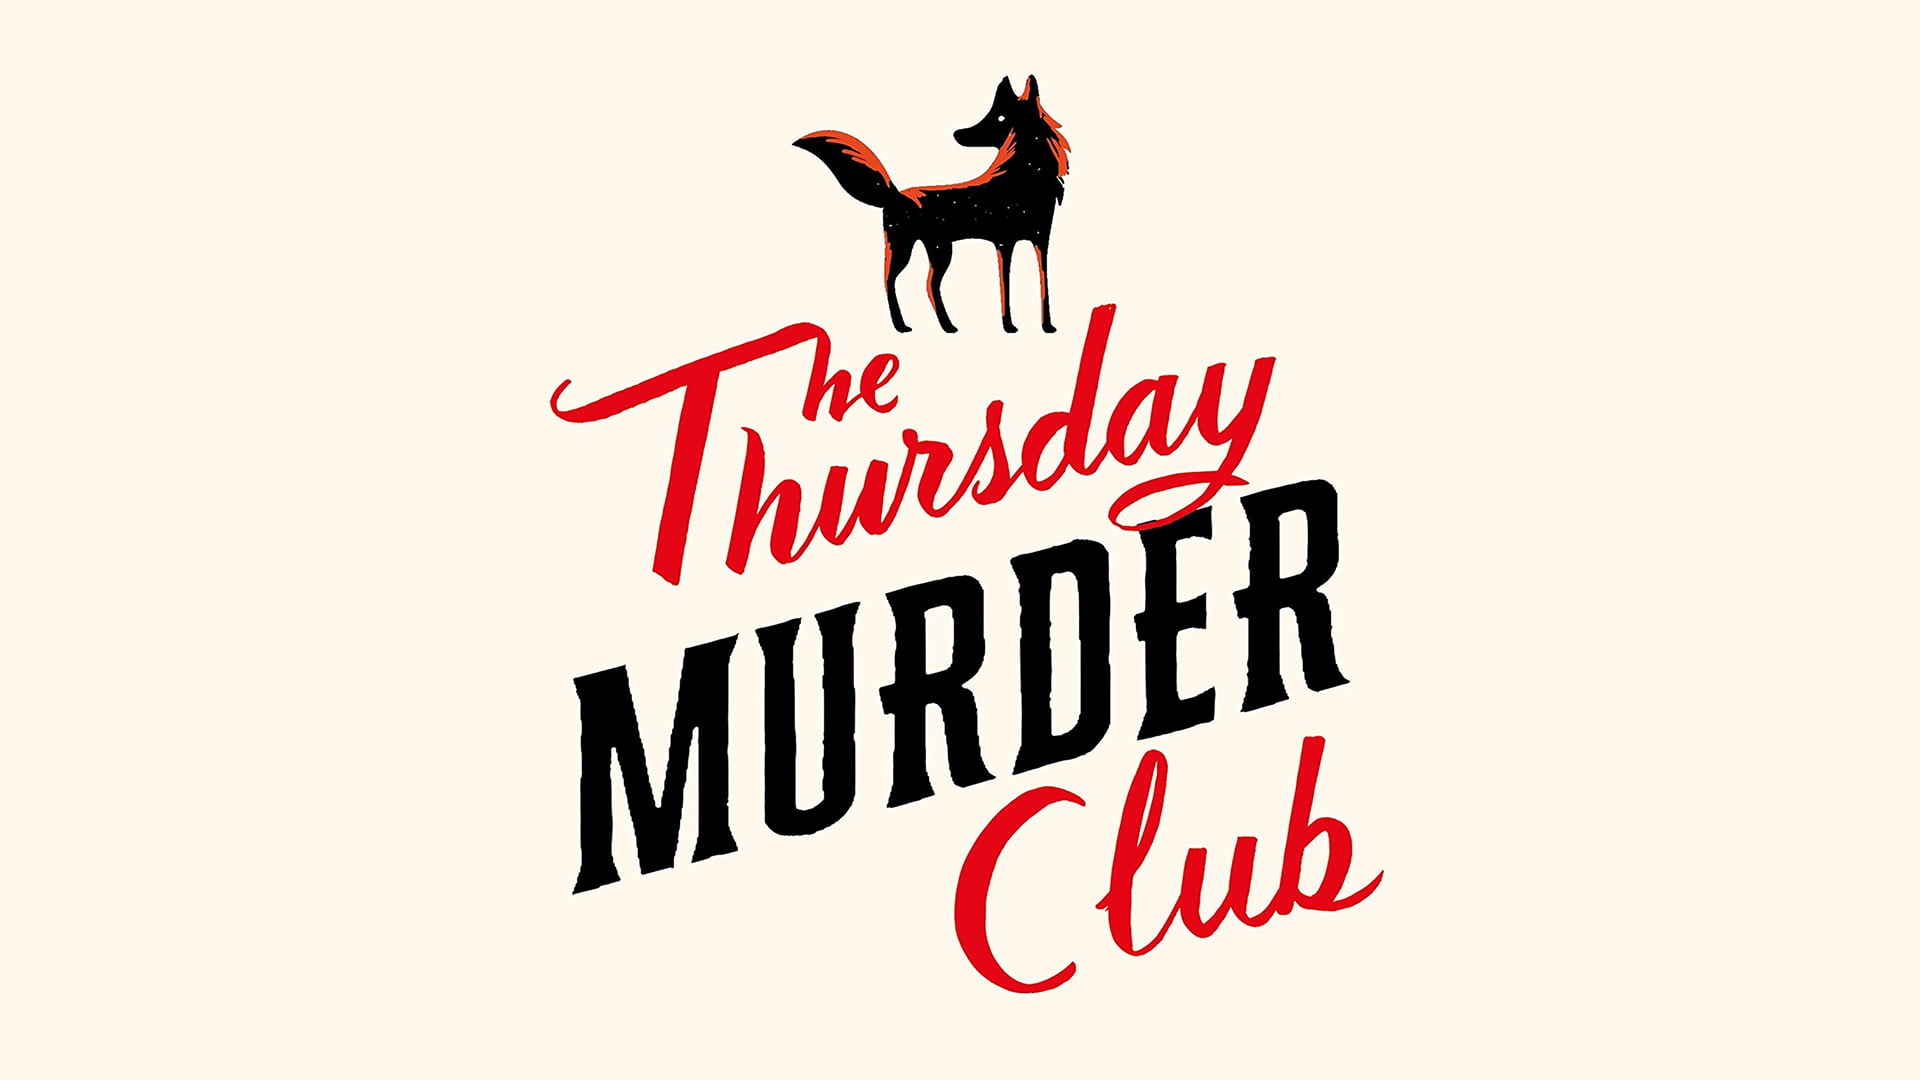 A Thursday Murder Club Mystery